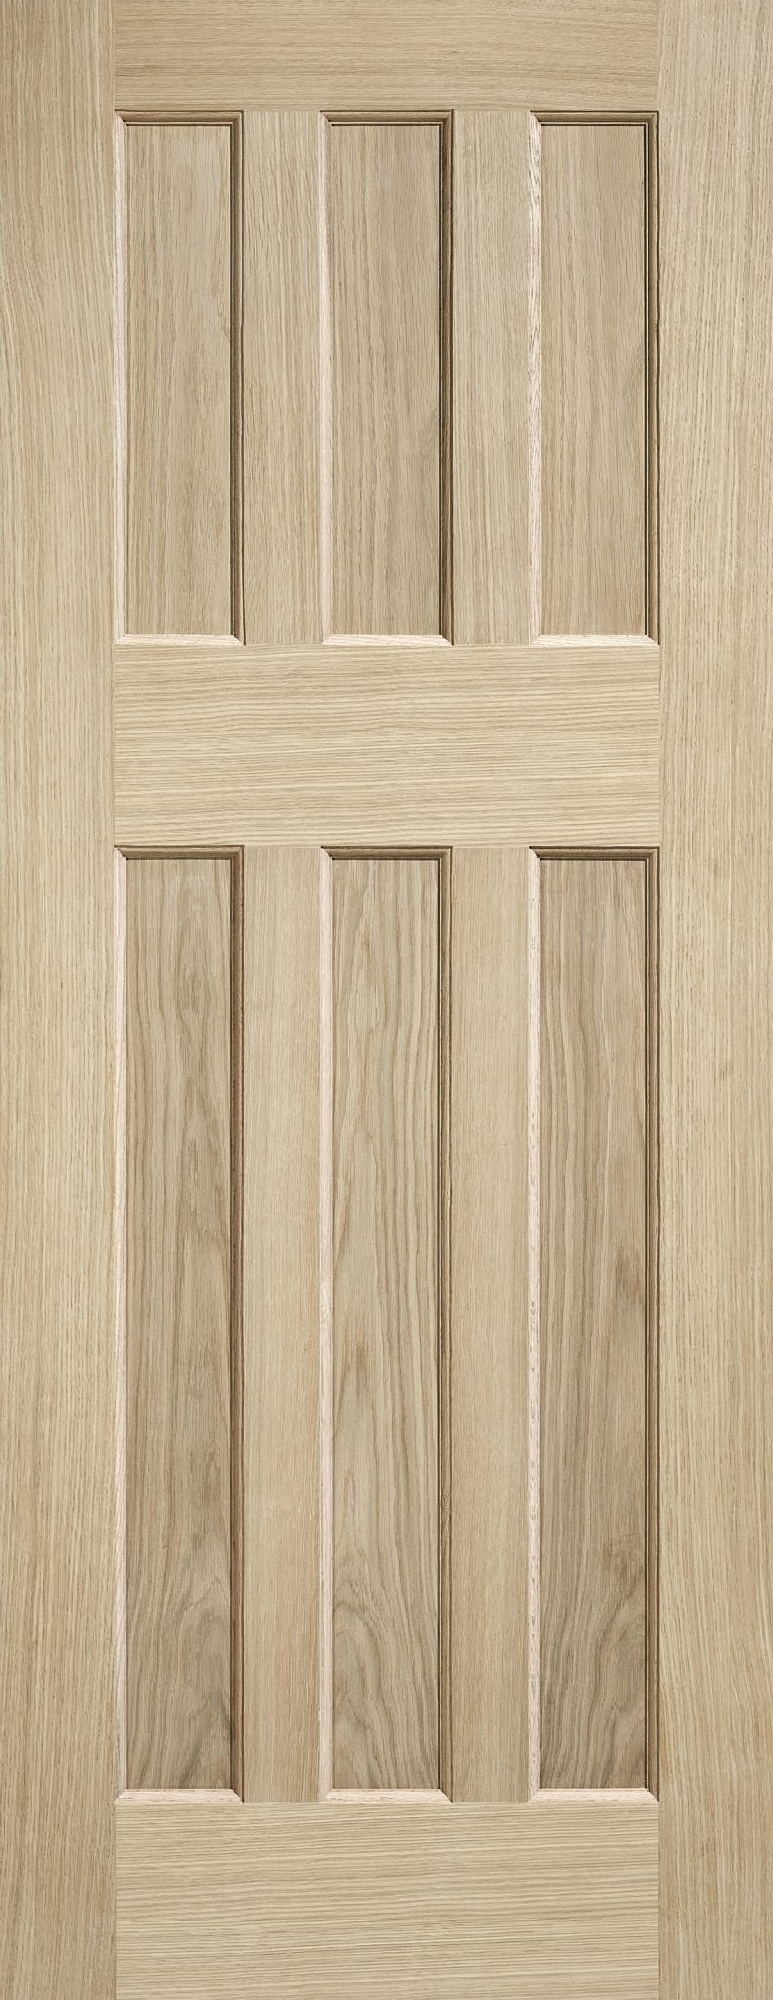 An image of DX 60's Style Oak Veneer Internal Door